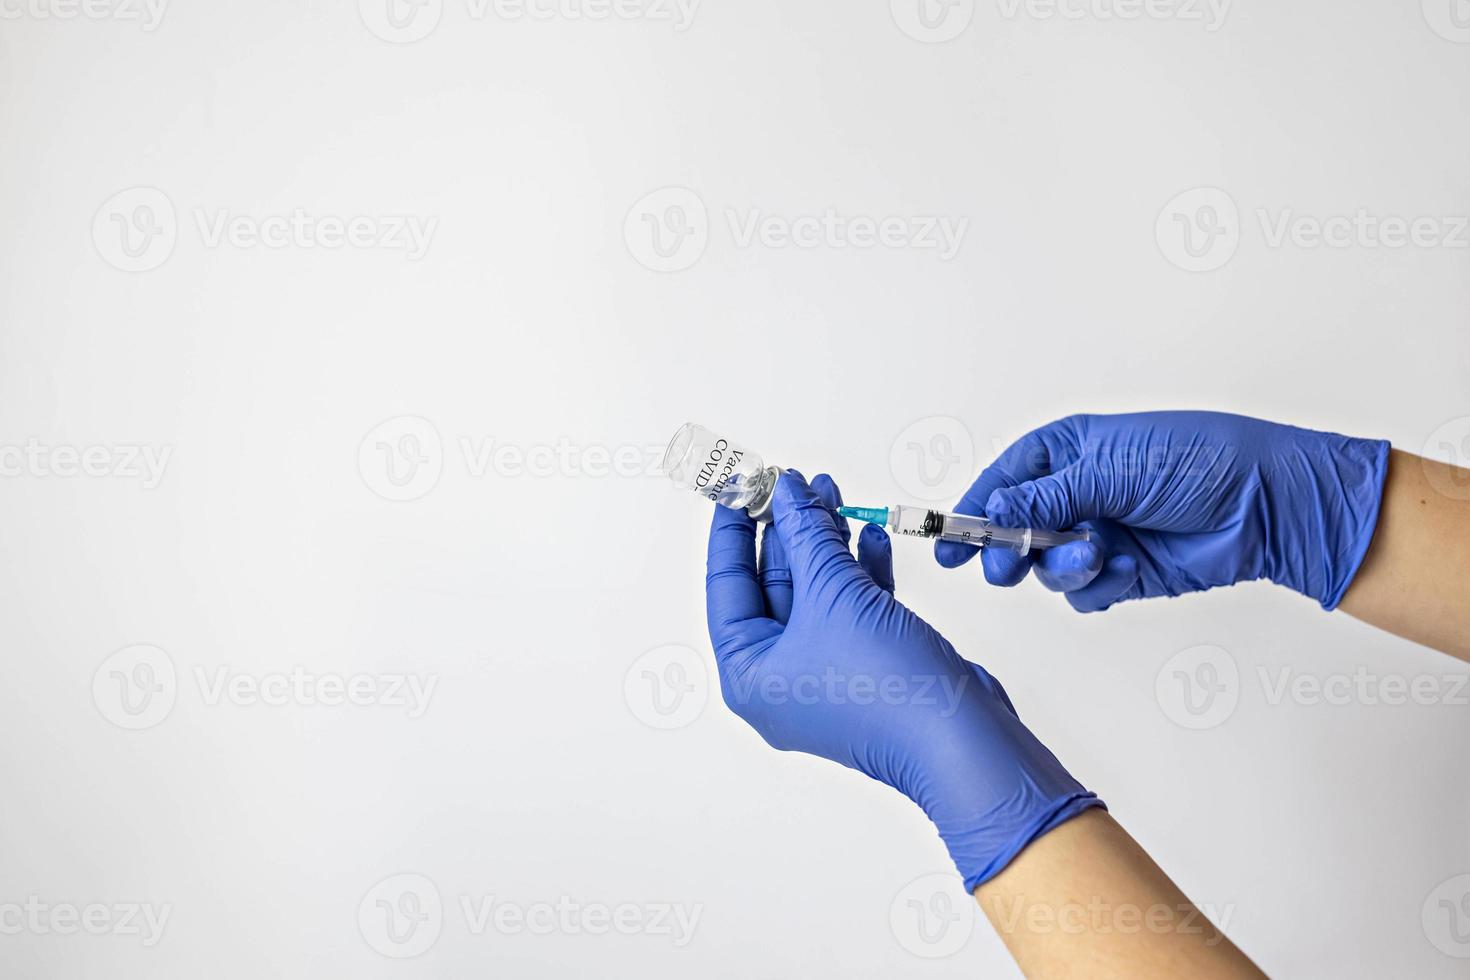 un travailleur médical en gants médicaux aspire une dose de vaccin contre le coronavirus dans une seringue. le concept de vaccination, immunisation, prévention des personnes de covid-19 photo